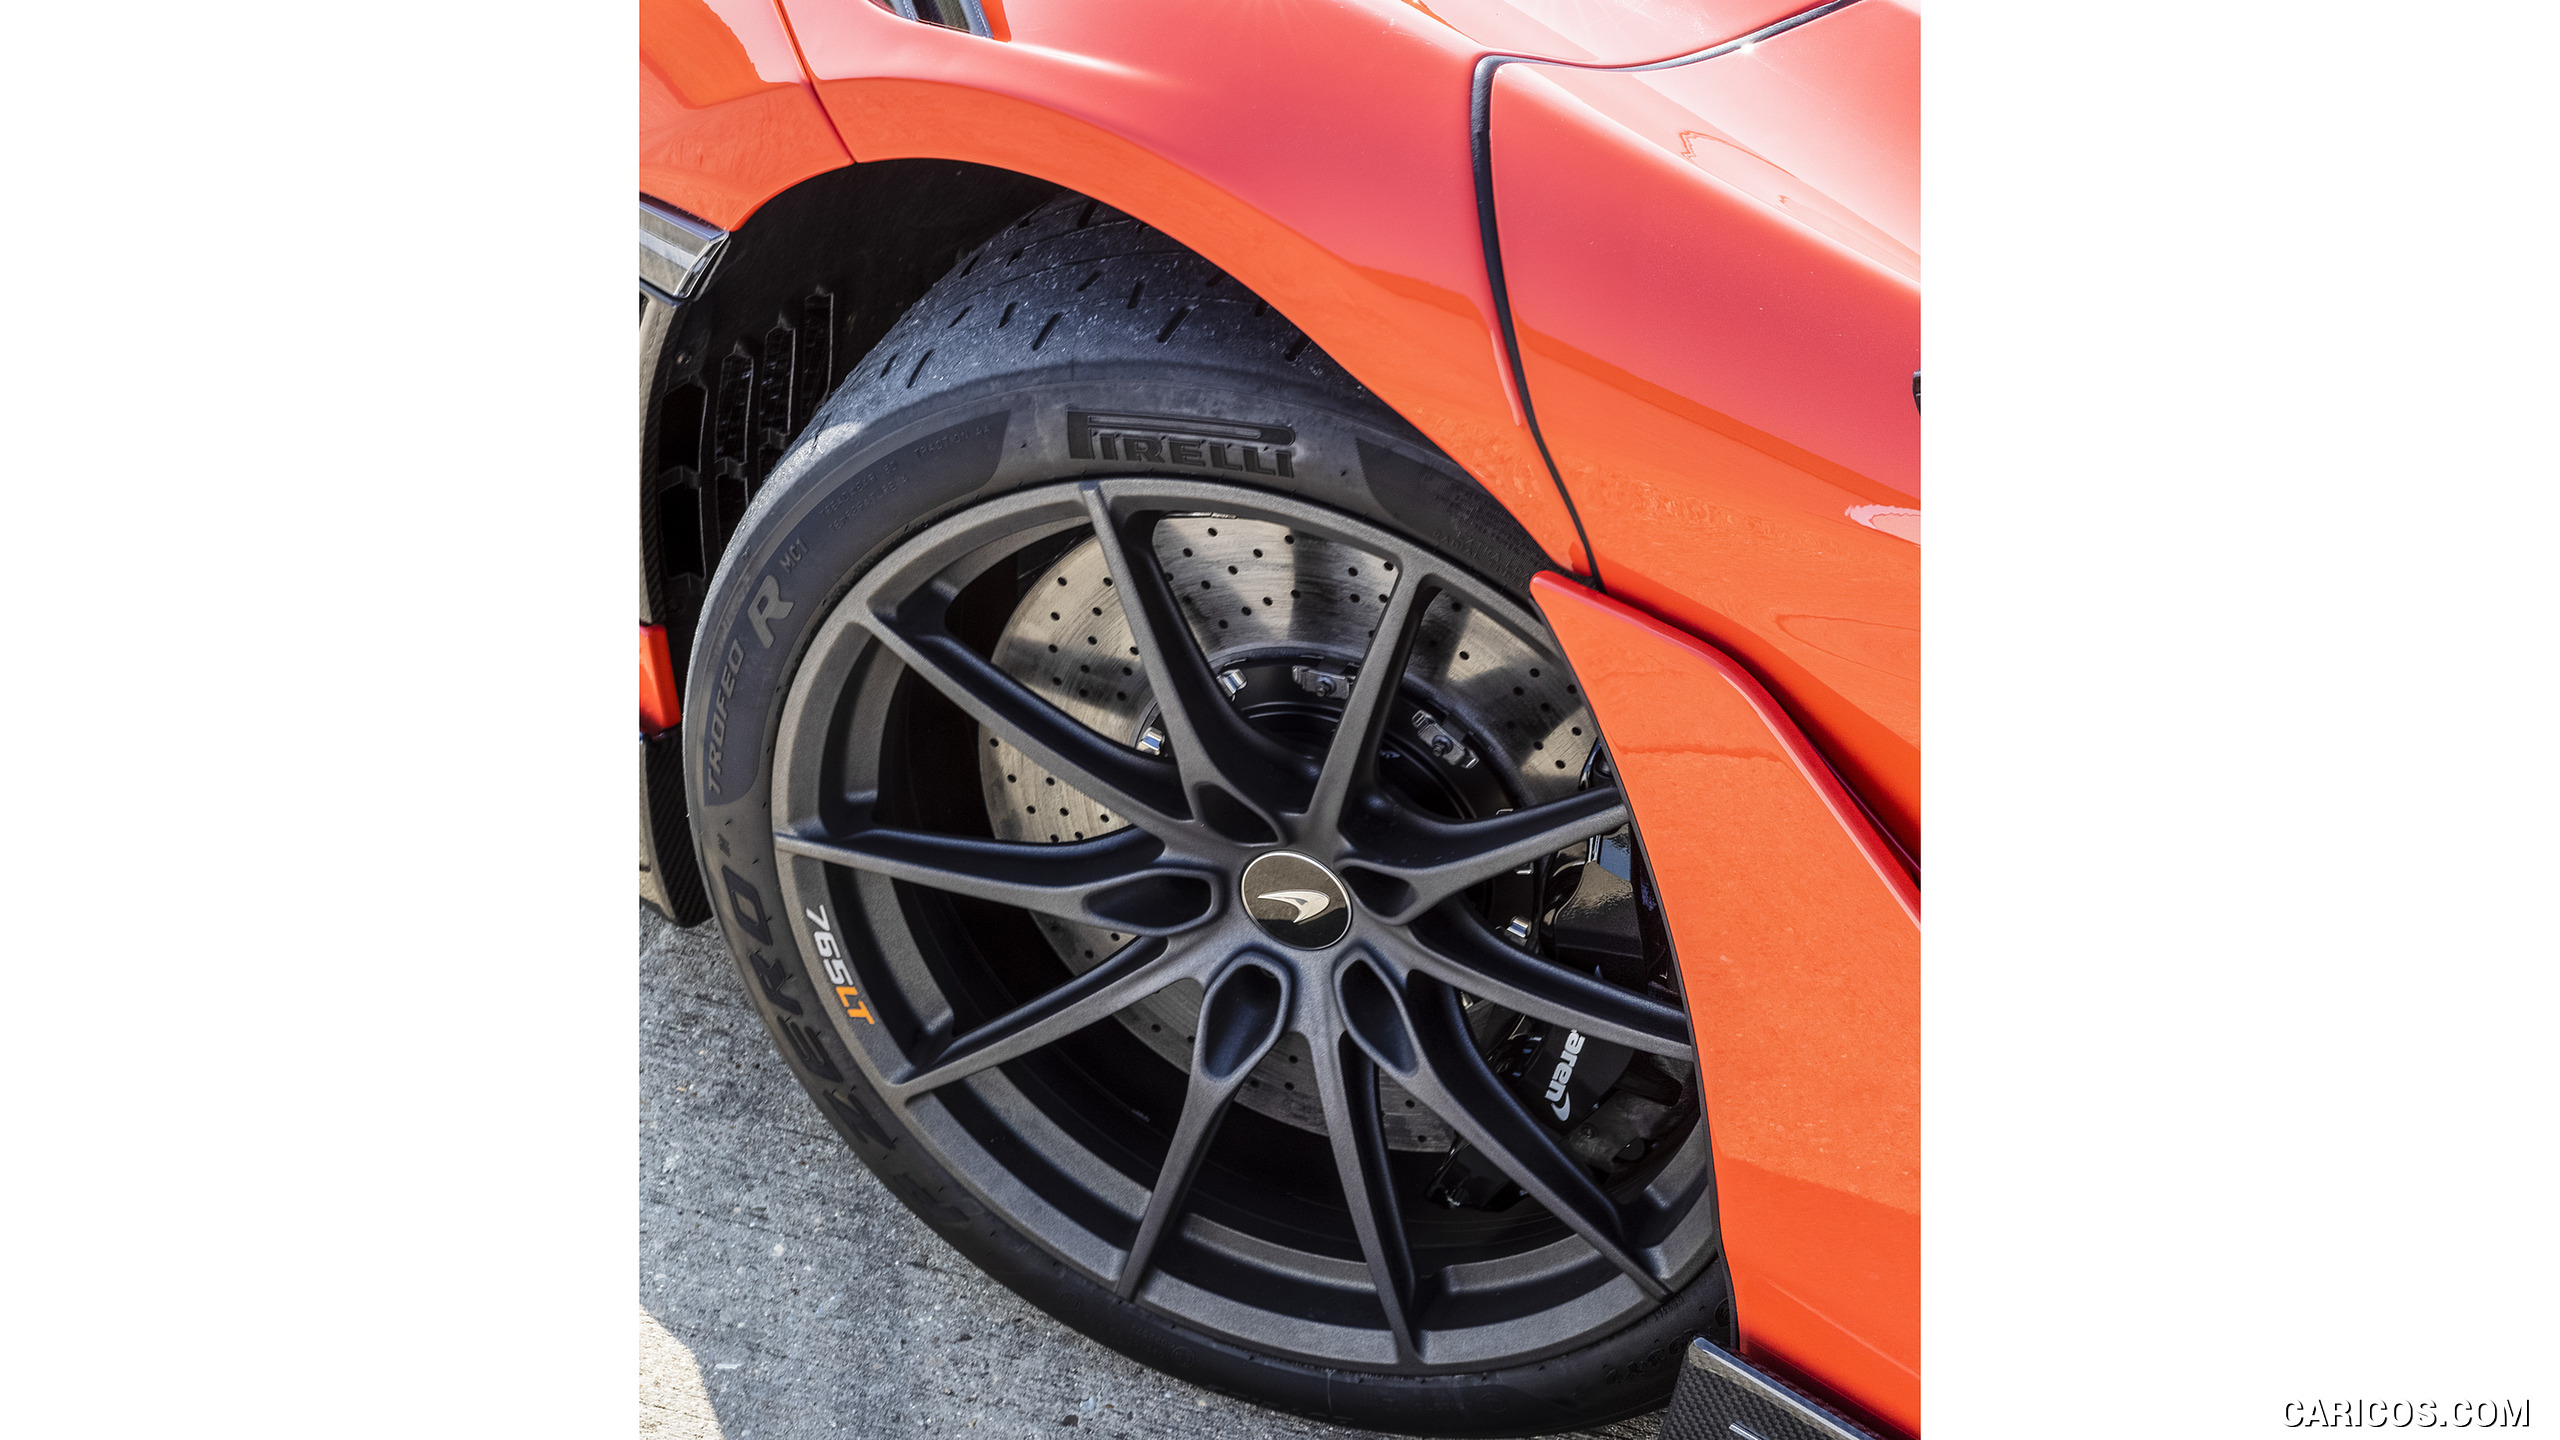 2021 McLaren 765LT - Wheel, #89 of 159